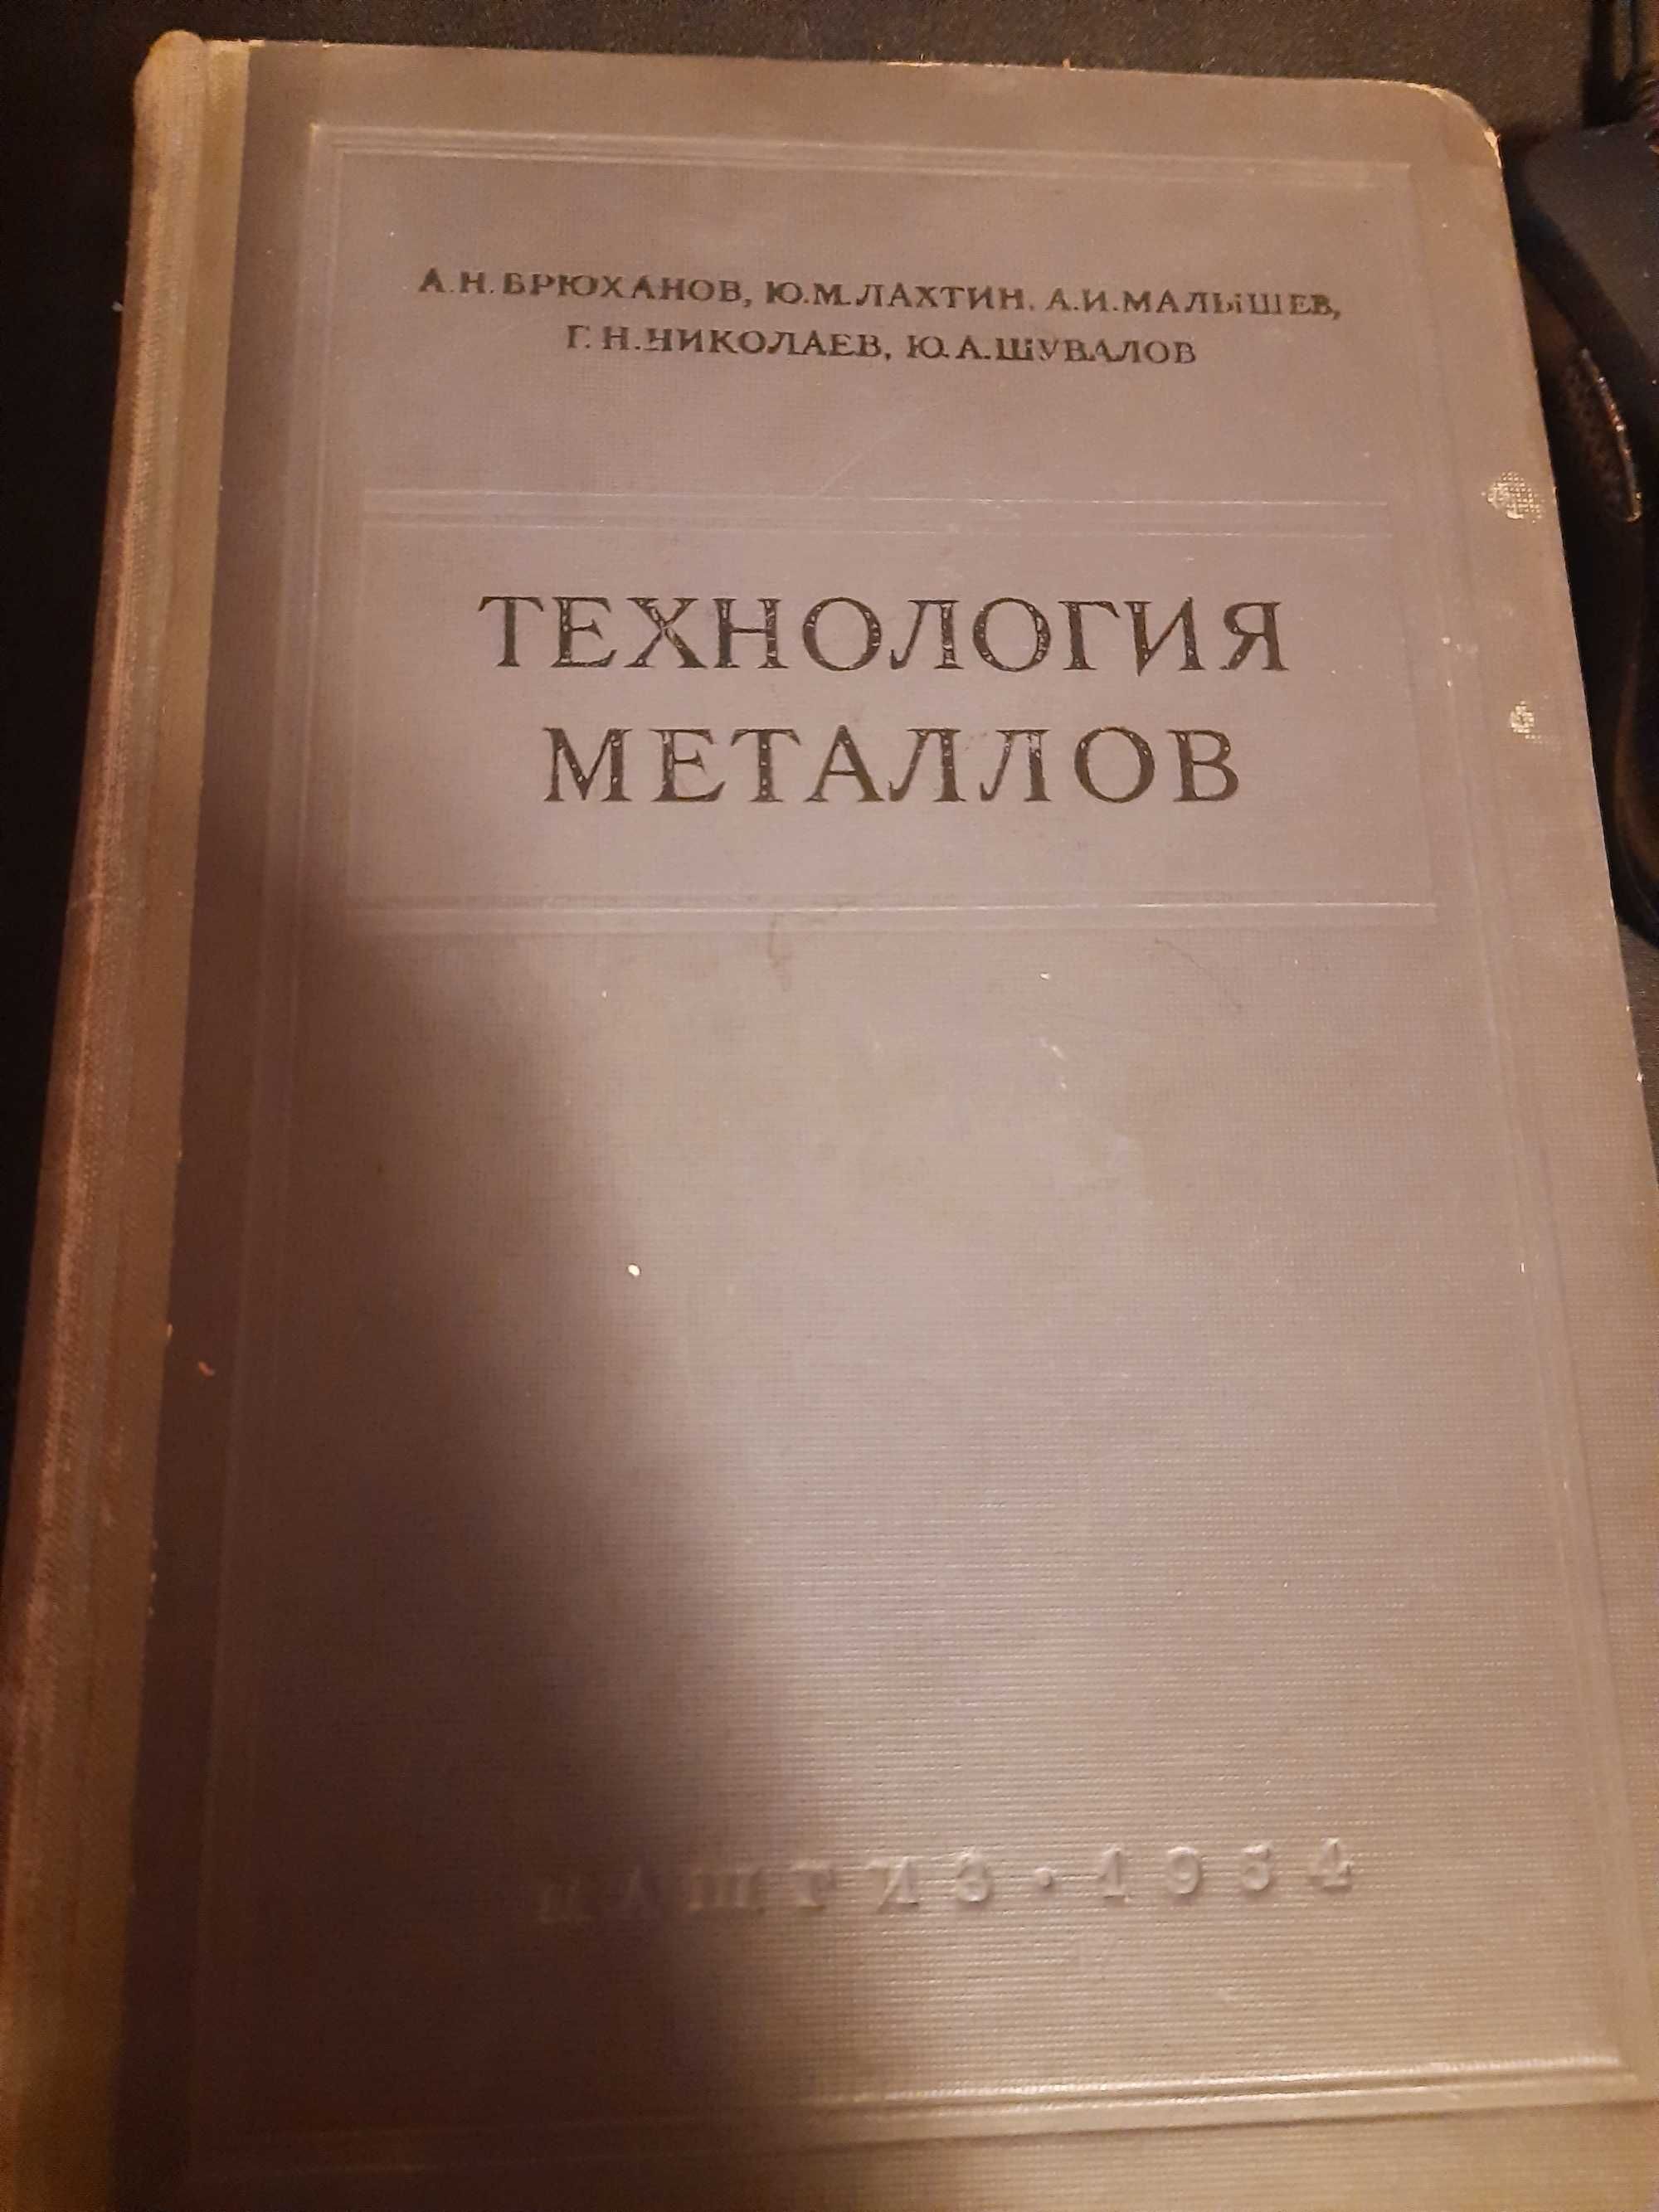 А.Н. Брюханов технология металлов 1954